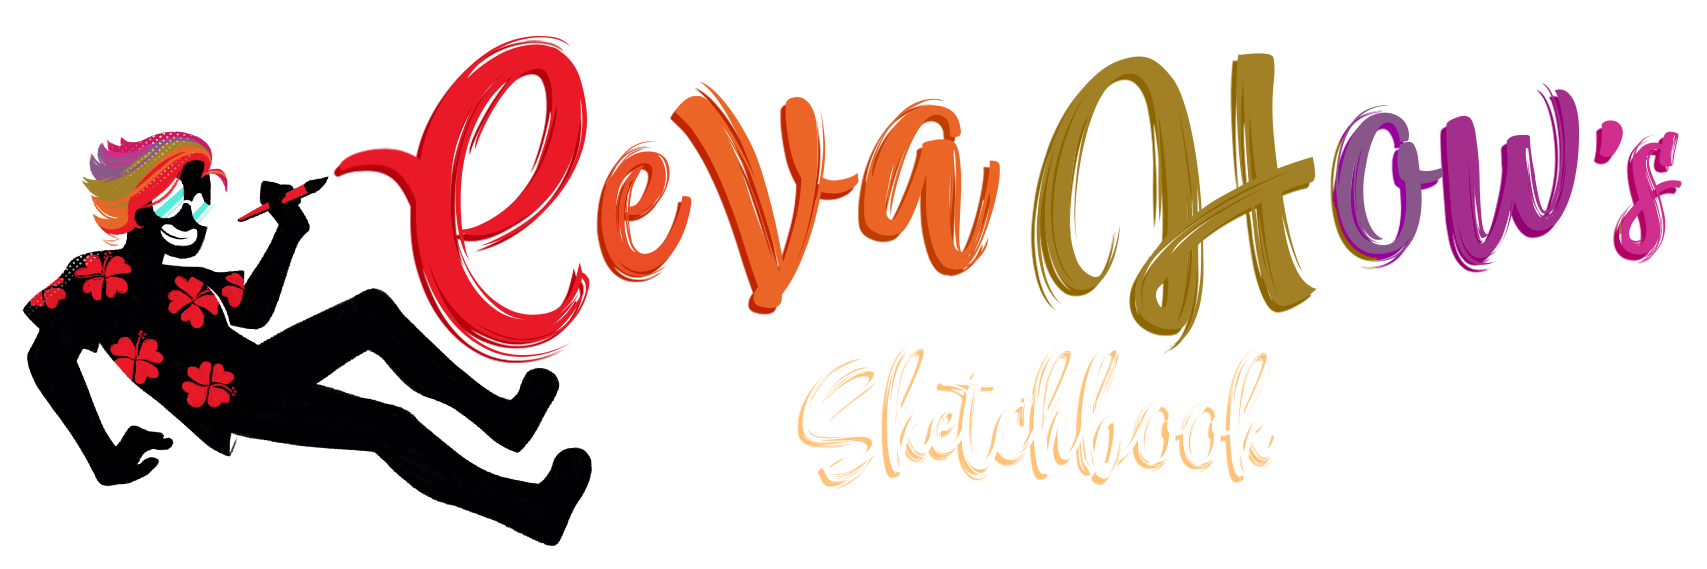 Eeva's Sketchbook